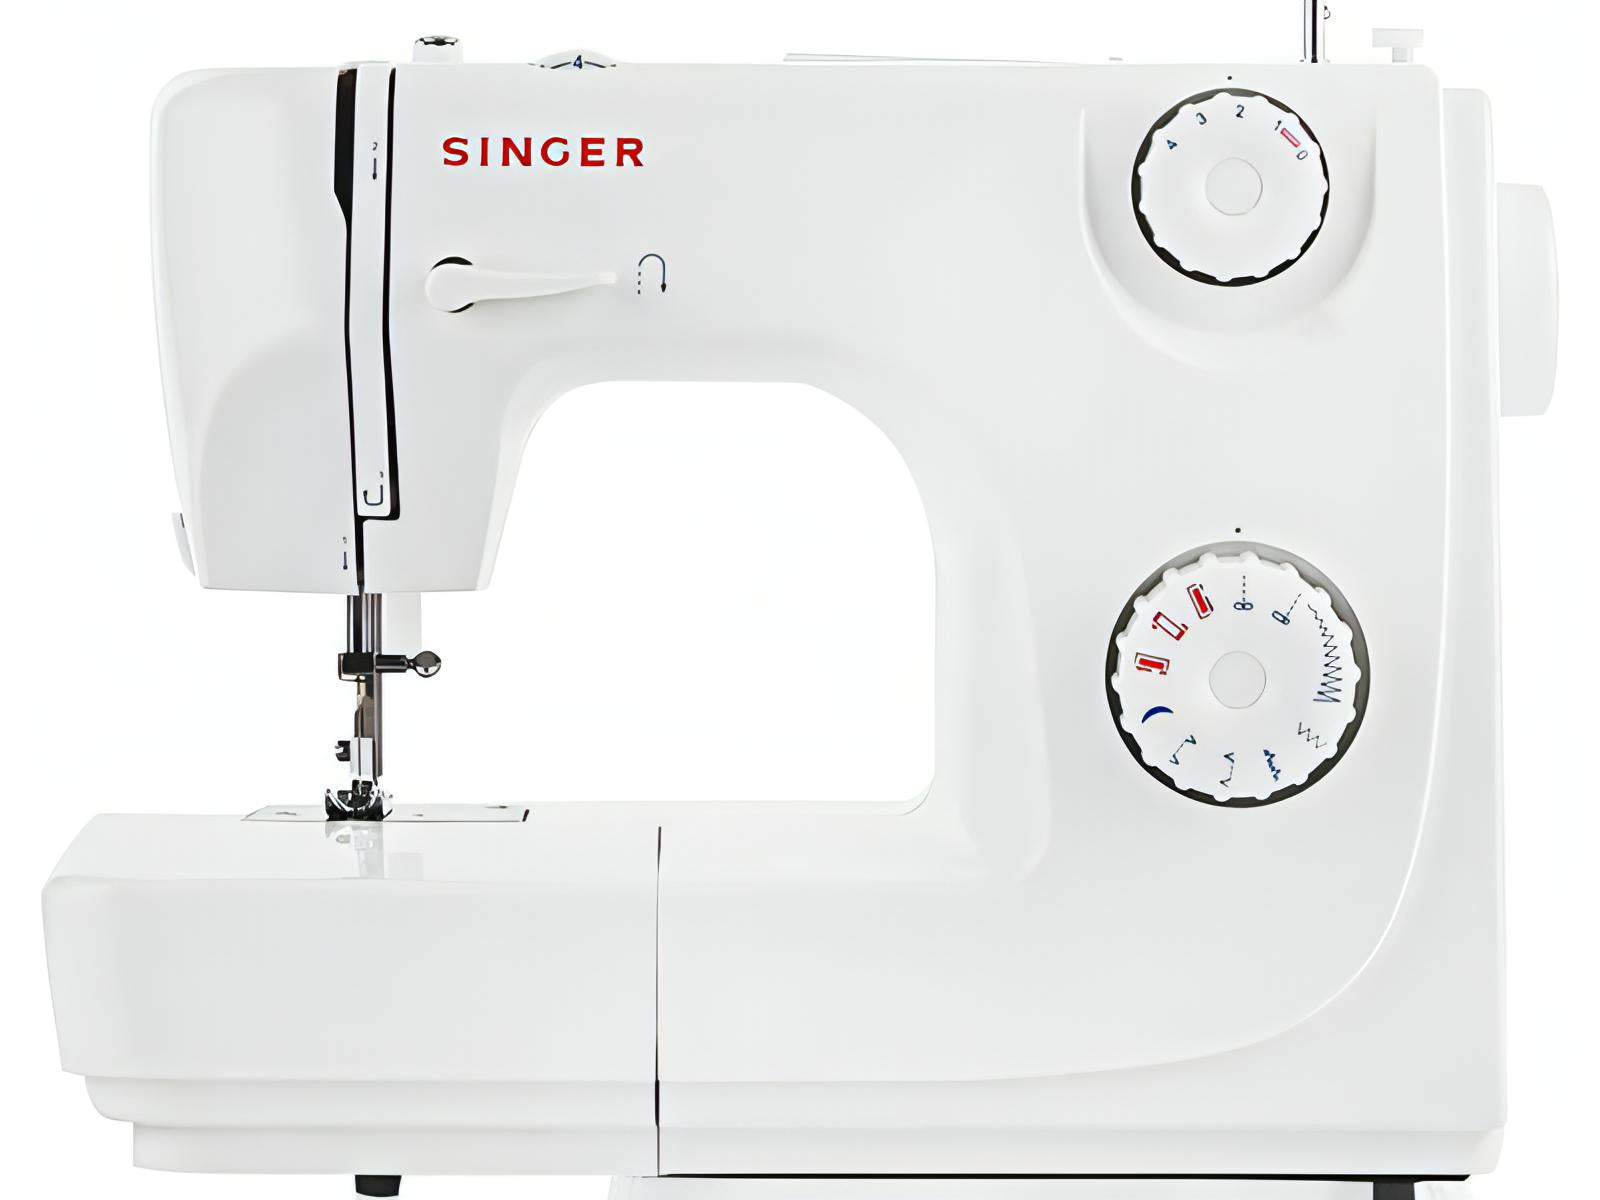 Singer MasterStitch 1600 Series Sewing Machine + FREE Singer